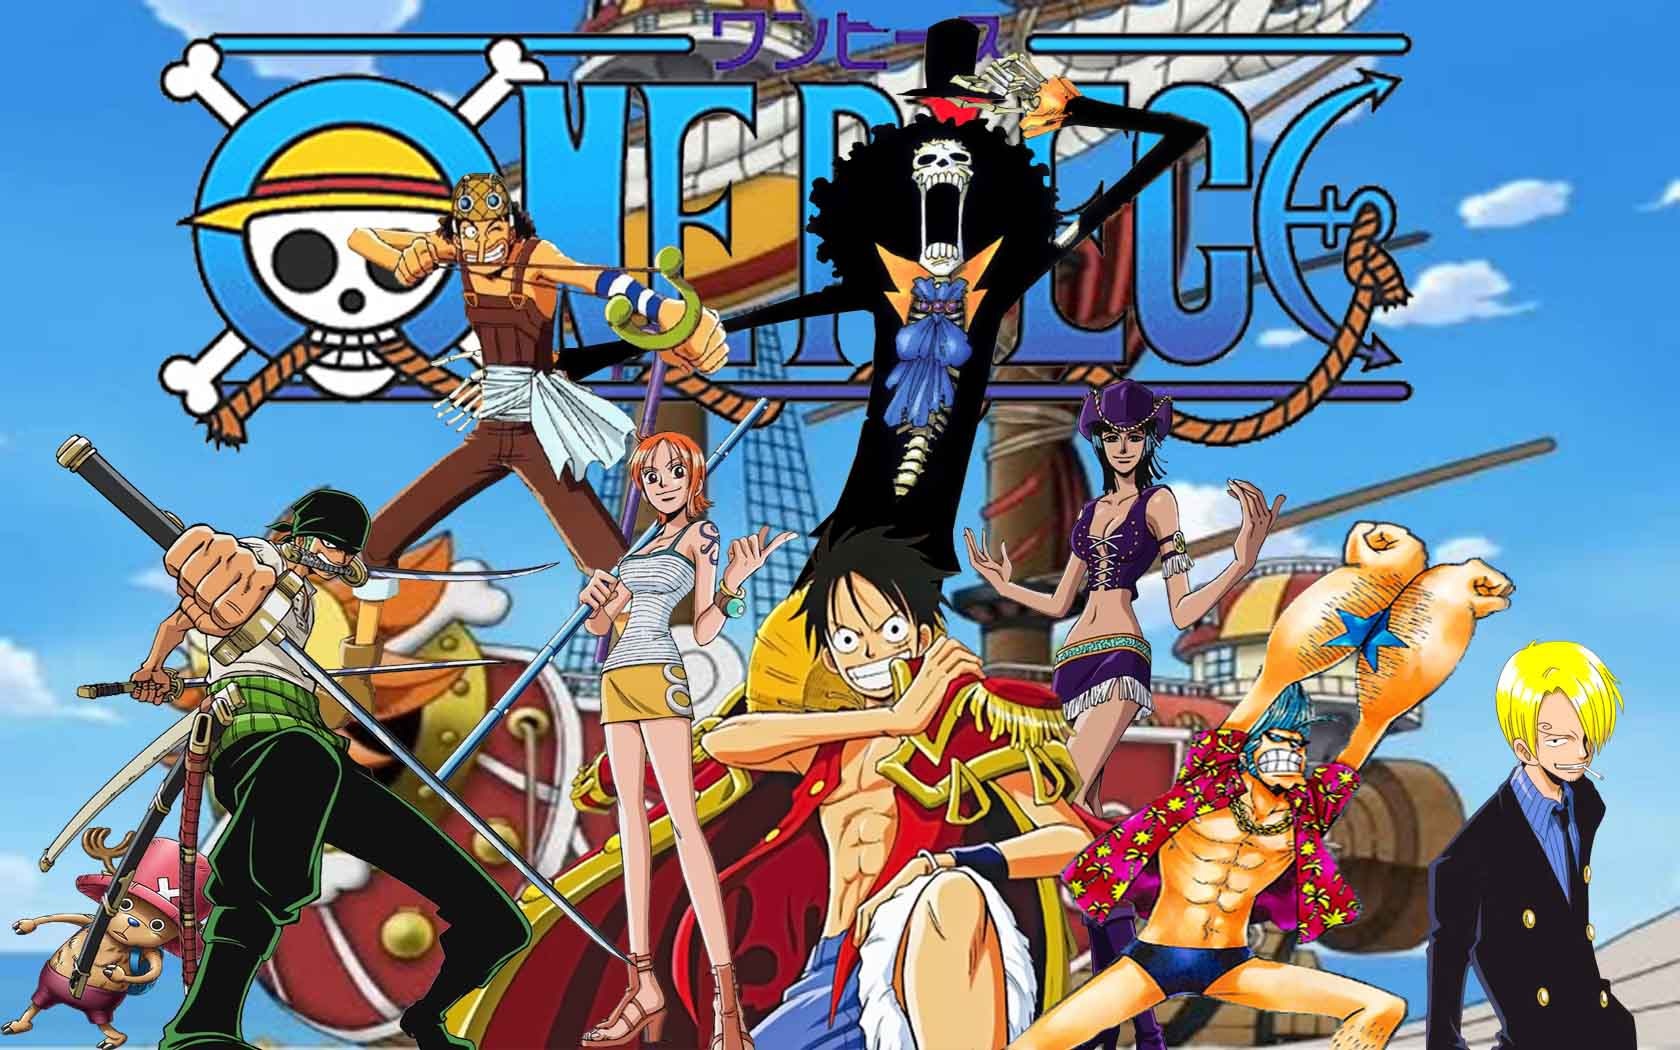 Hãy cùng thưởng thức những hình ảnh anime One Piece đẹp mắt, giúp bạn cảm thấy như mình đang được đặt chân đến thế giới màu sắc đầy cảm xúc của One Piece. Những hình ảnh nhân vật được thiết kế tinh xảo cùng với cảnh quan nơi đây sẽ khiến bạn không thể rời mắt được.